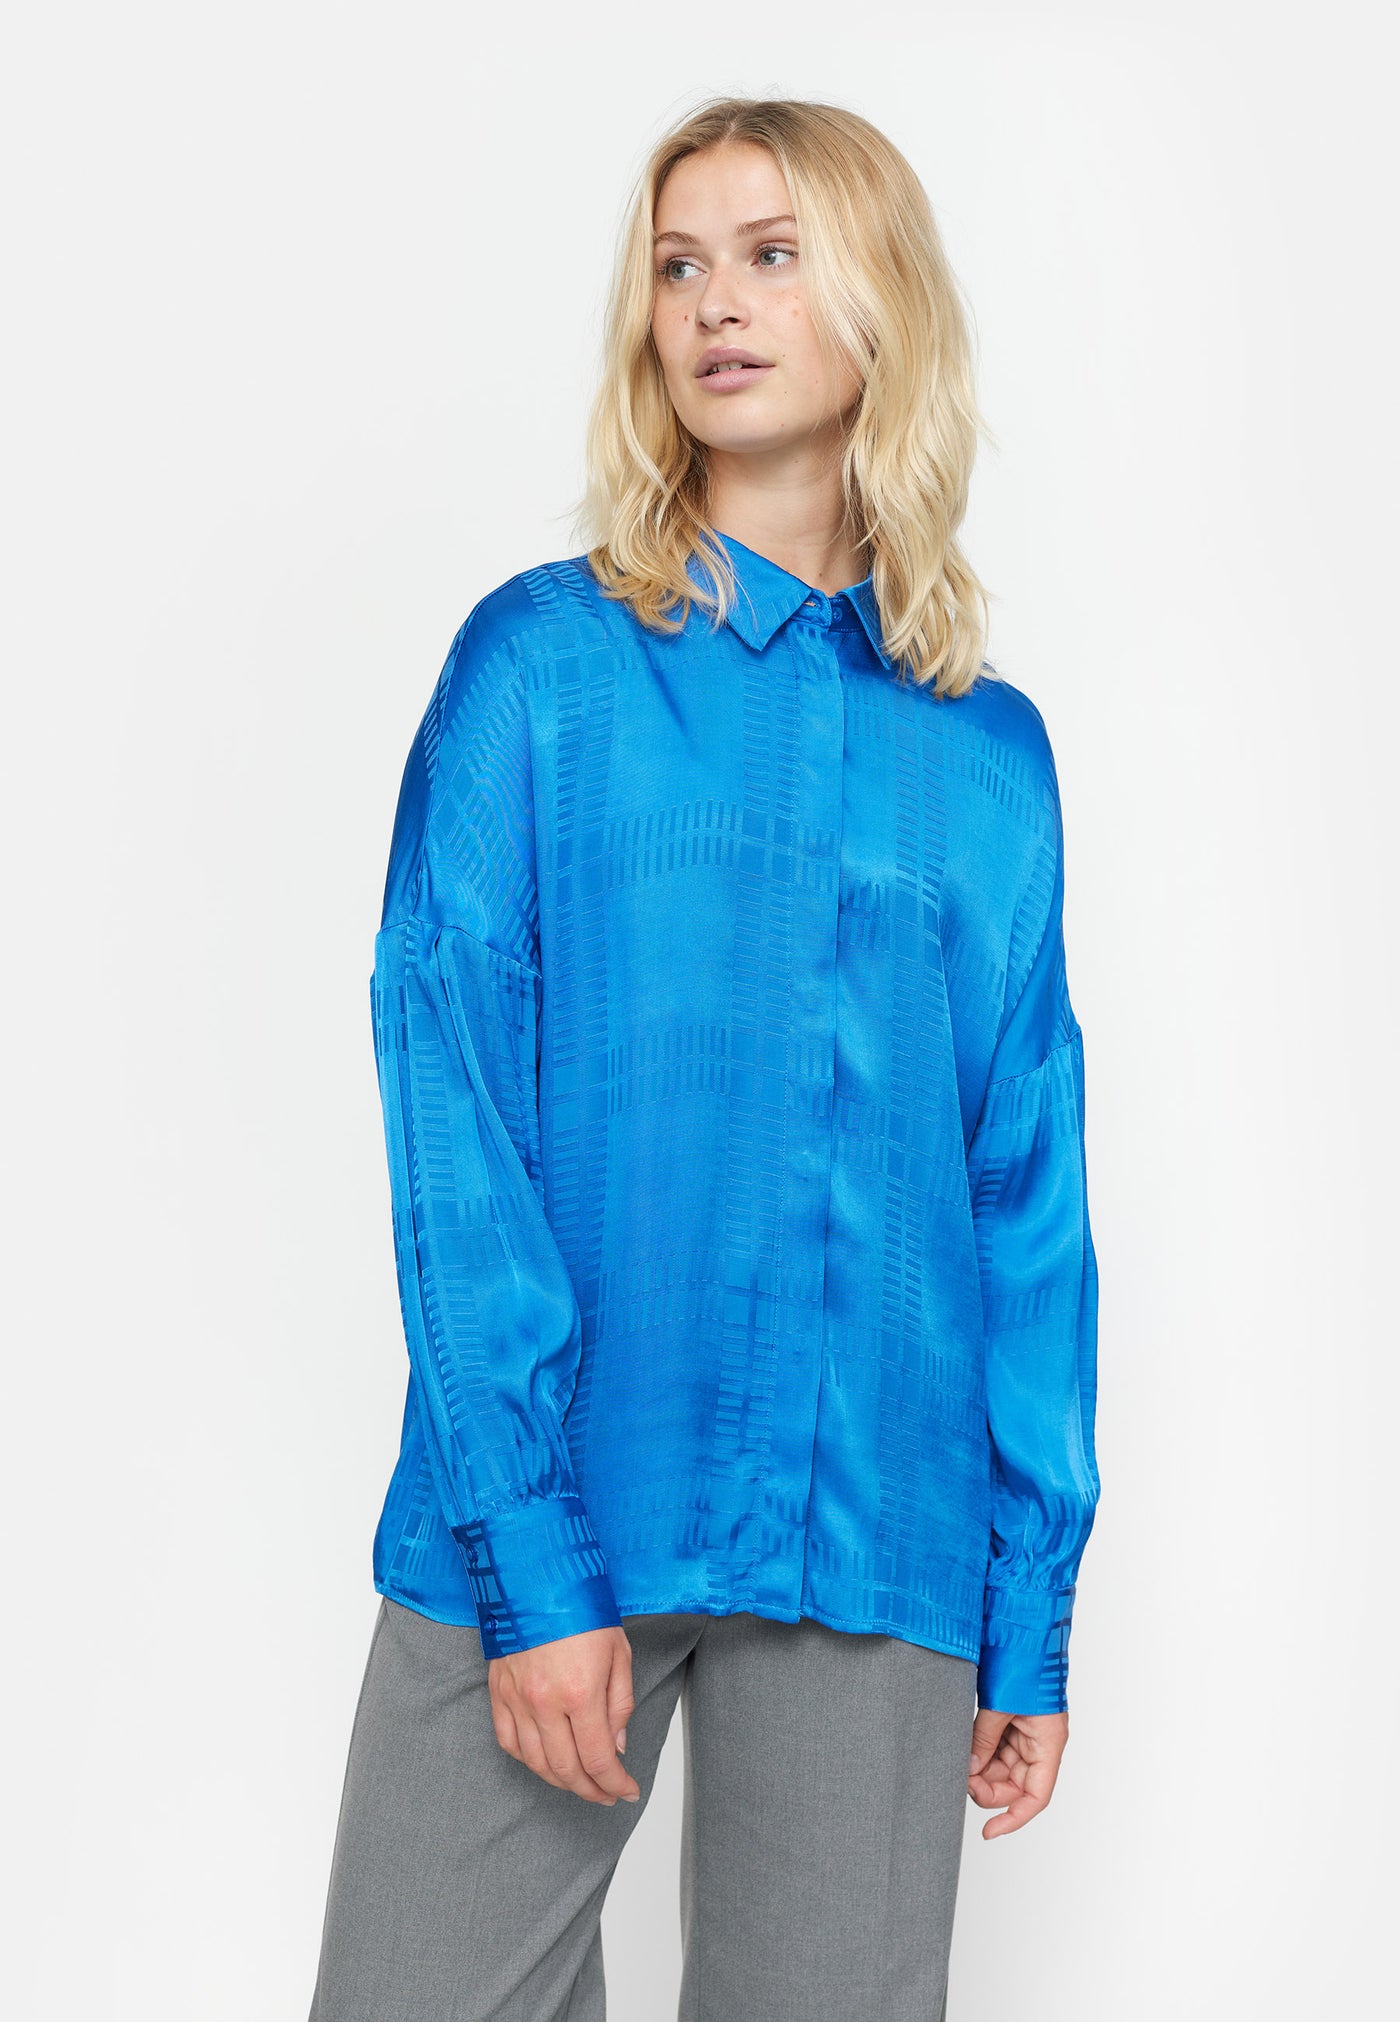 Soft Rebels SRAida Shirt Shirts & Blouse 700 Check Jacquard Strong Blue